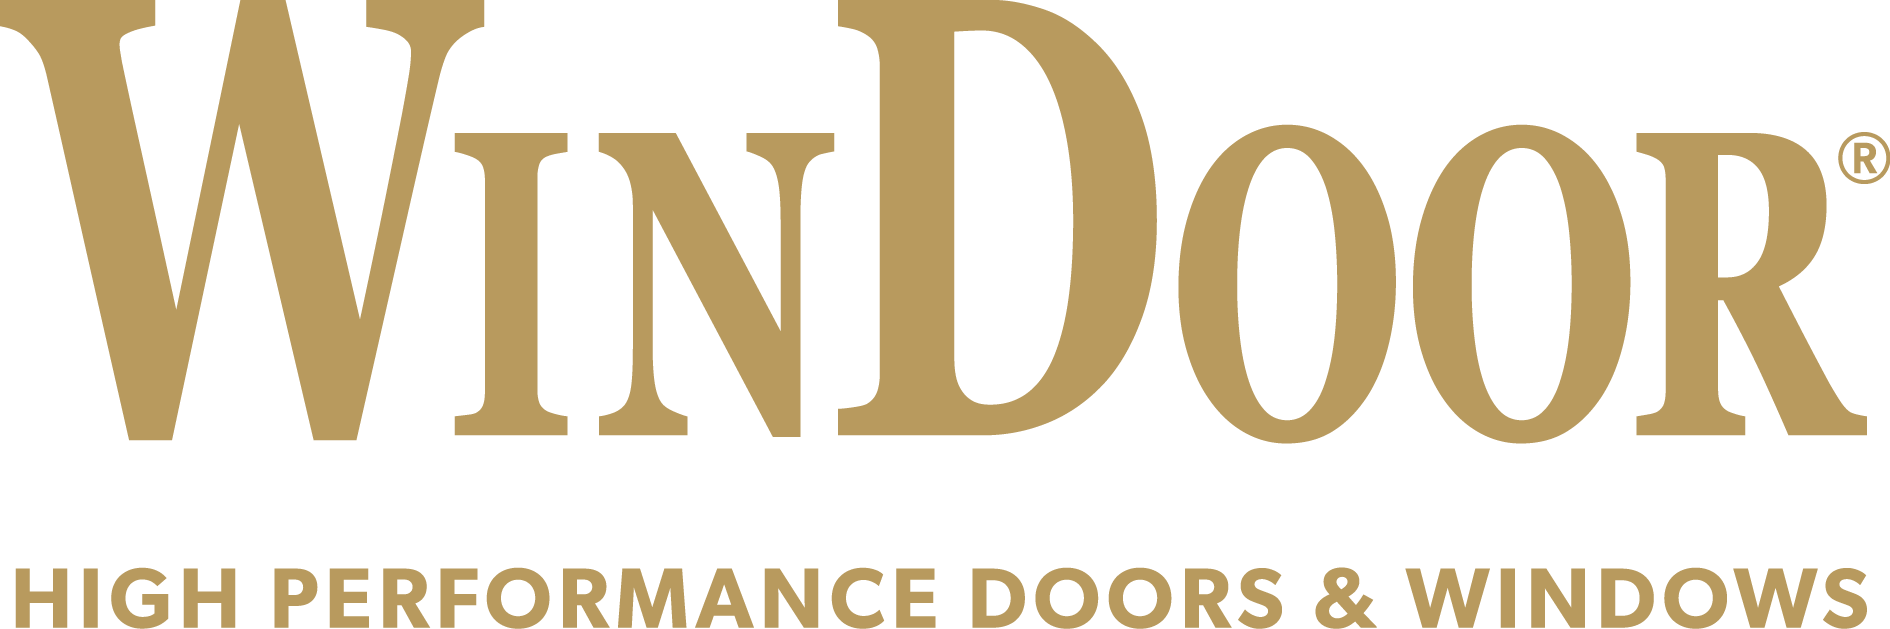 WinDoor Windows and Doors Products